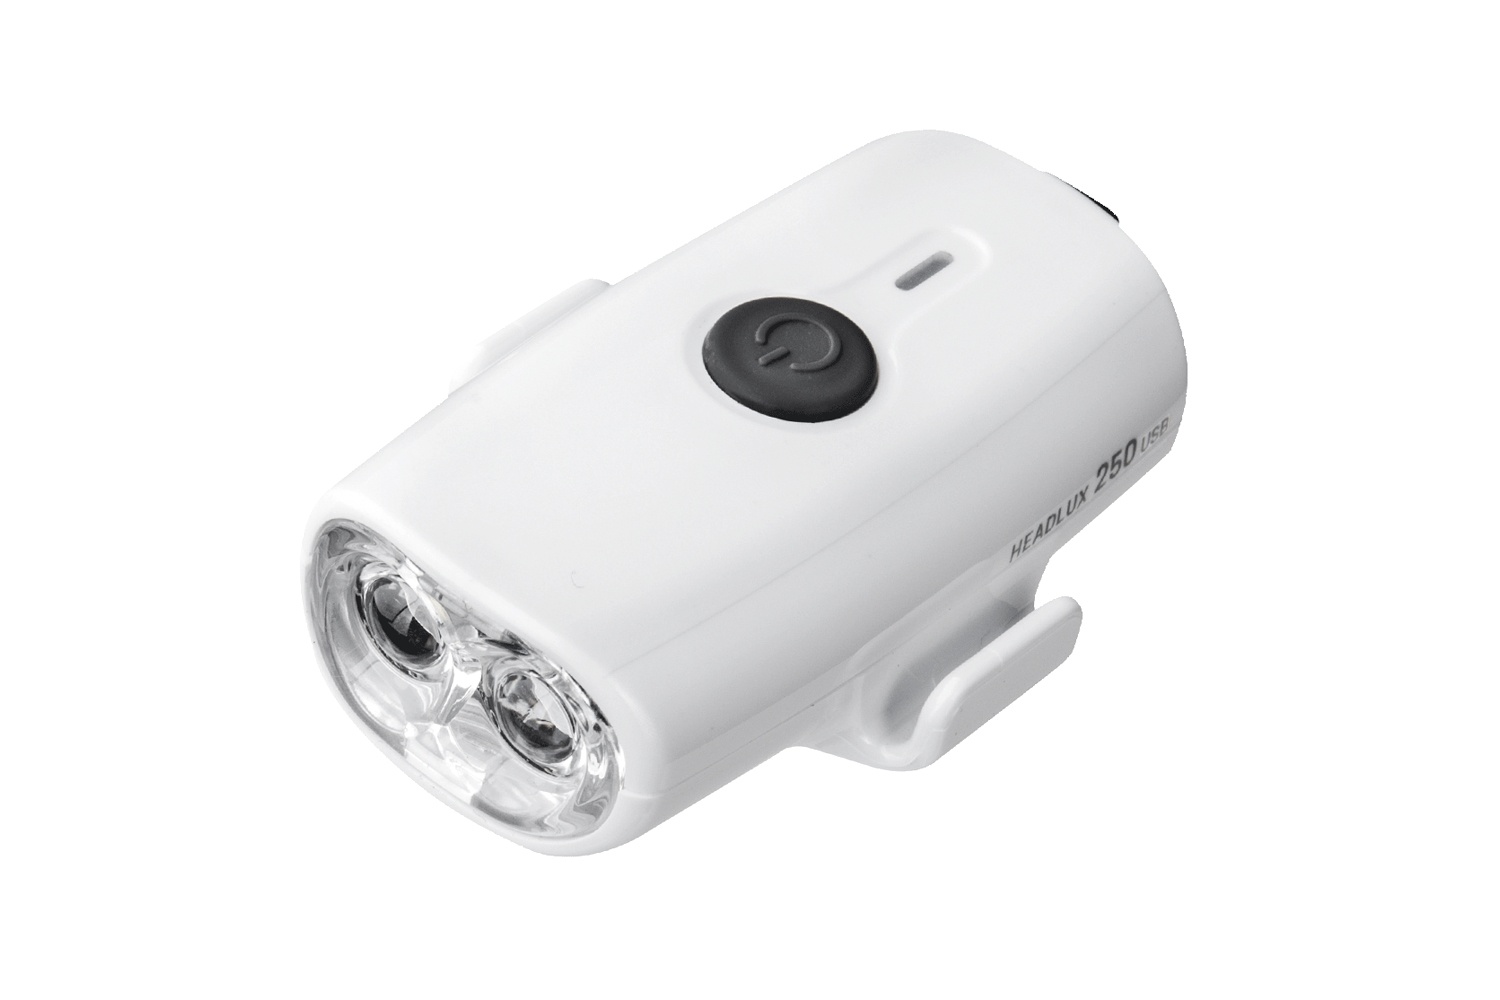  Передний фонарь для велосипеда Topeak Headlux 250 USB